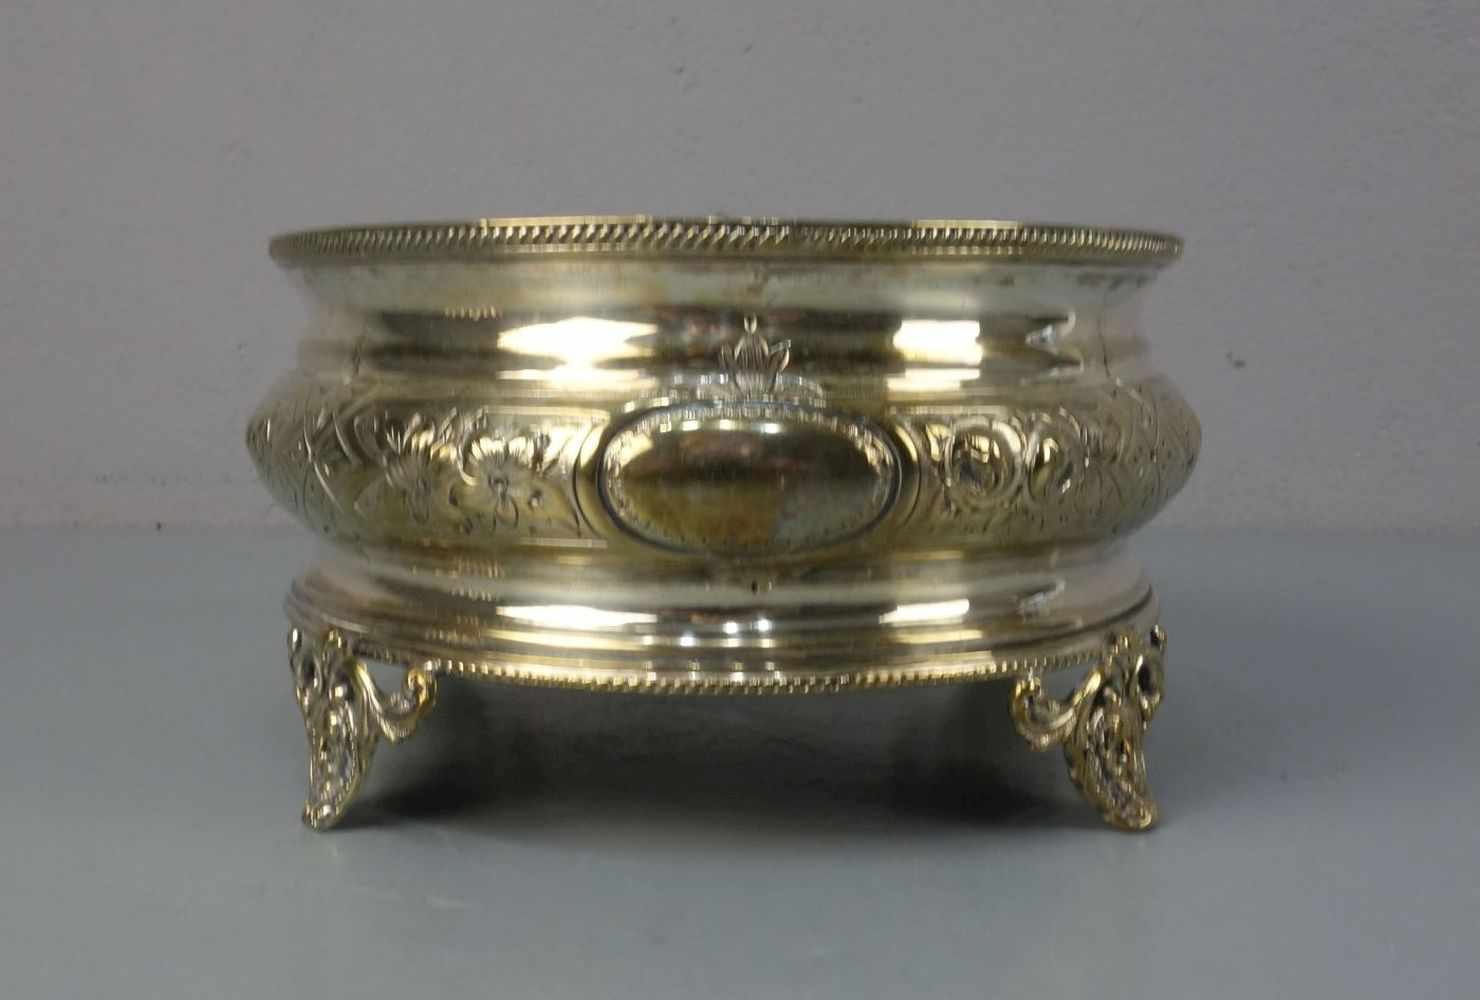 VERSILBERTE SCHALE / plated bowl, unter dem Stand u. a. gemarkt EPNS (für "electro plated nickel - Image 3 of 5